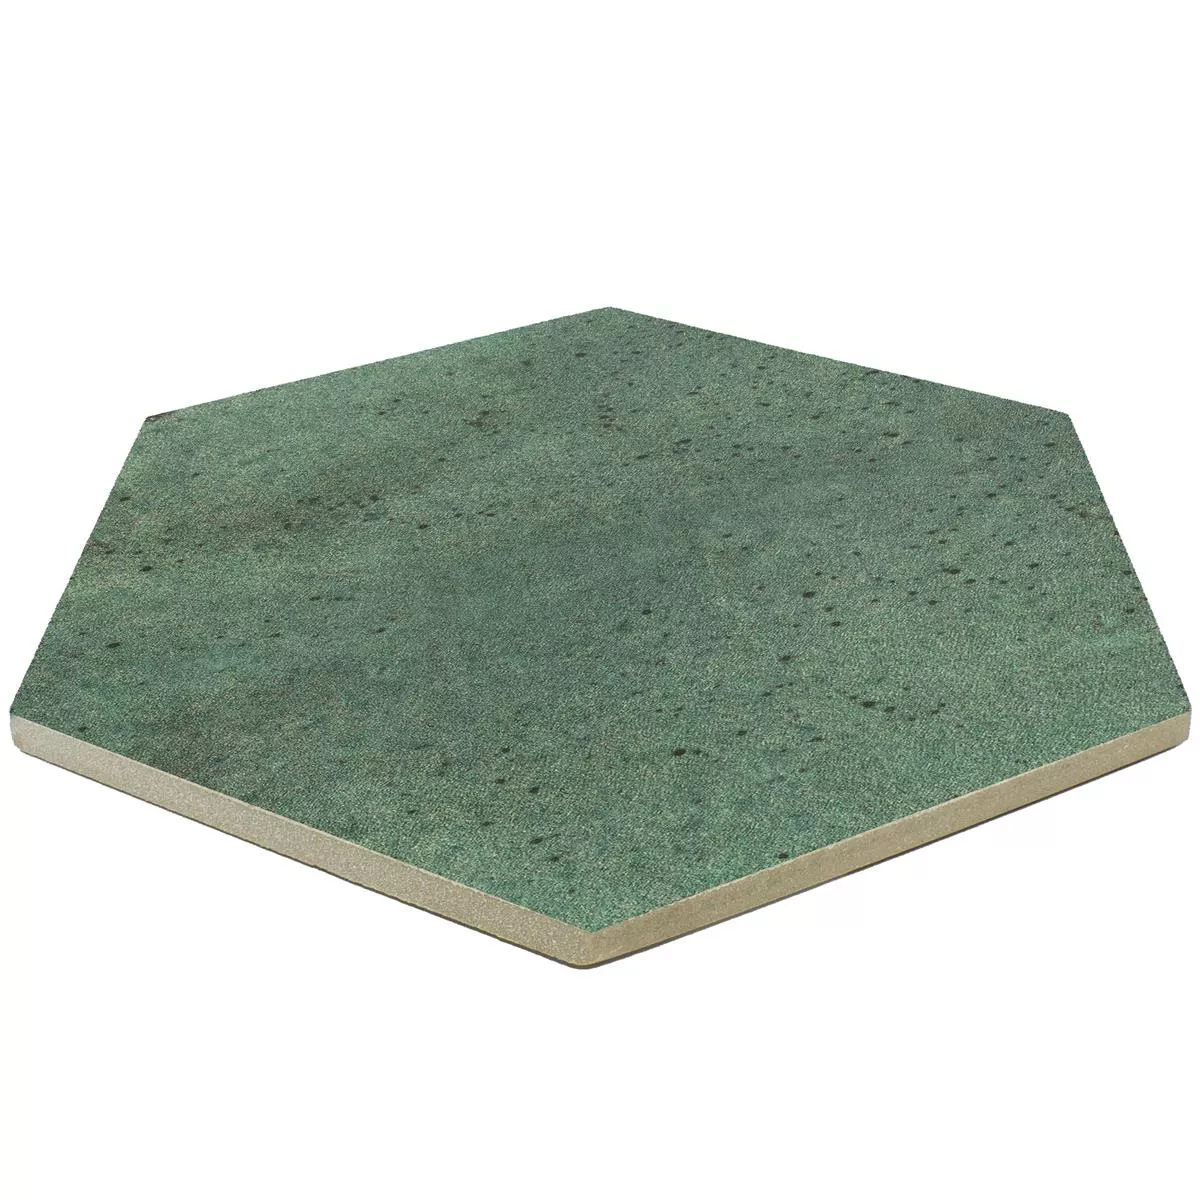 Πλακάκια Δαπέδου Arosa Παγωμένος Εξάγωνο Σμαραγδένιο Πράσινο 17,3x15cm